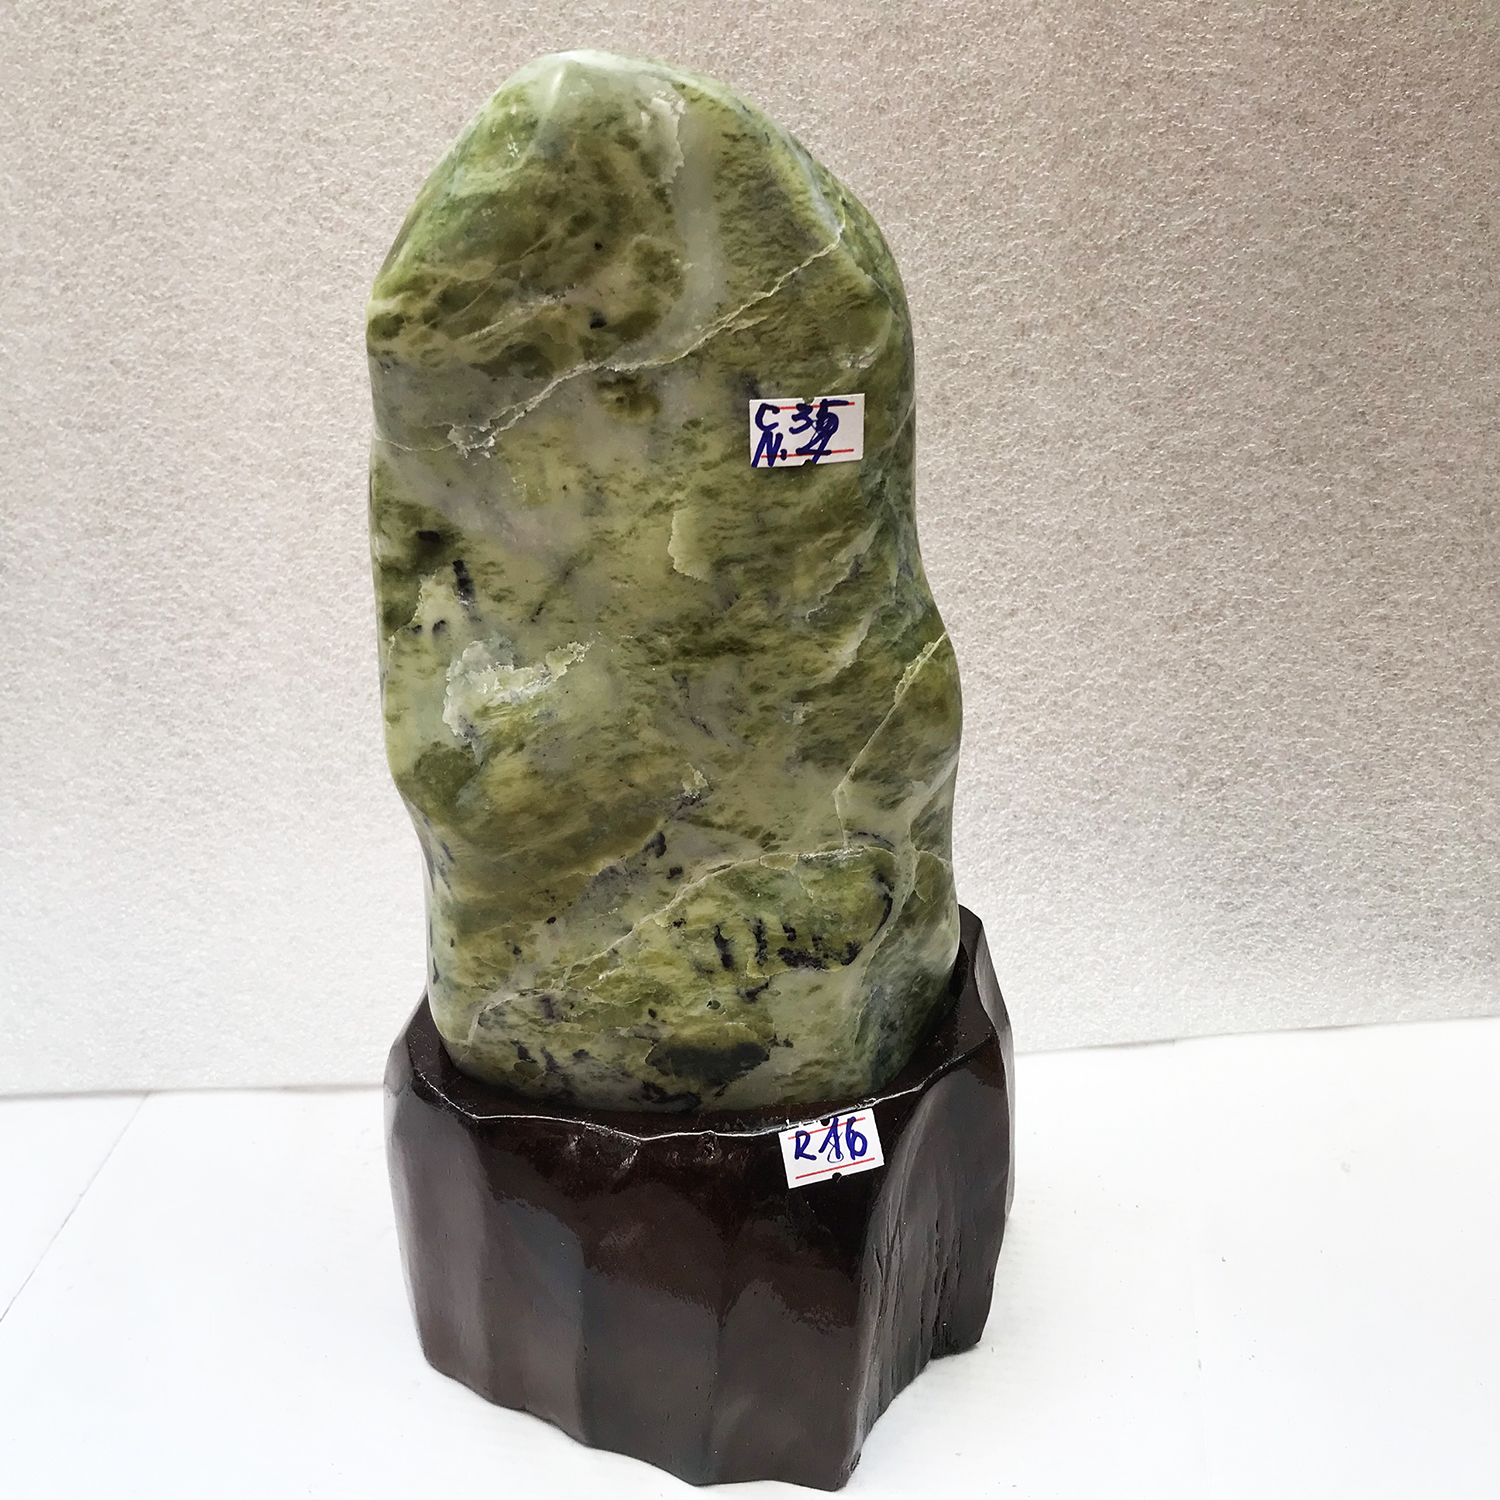 Cây đá phong thủy để bàn tự nhiên chất ngọc serpentine màu xanh đậm và bóng nặng 3 kg cho người mệnh Mộc và Hỏa